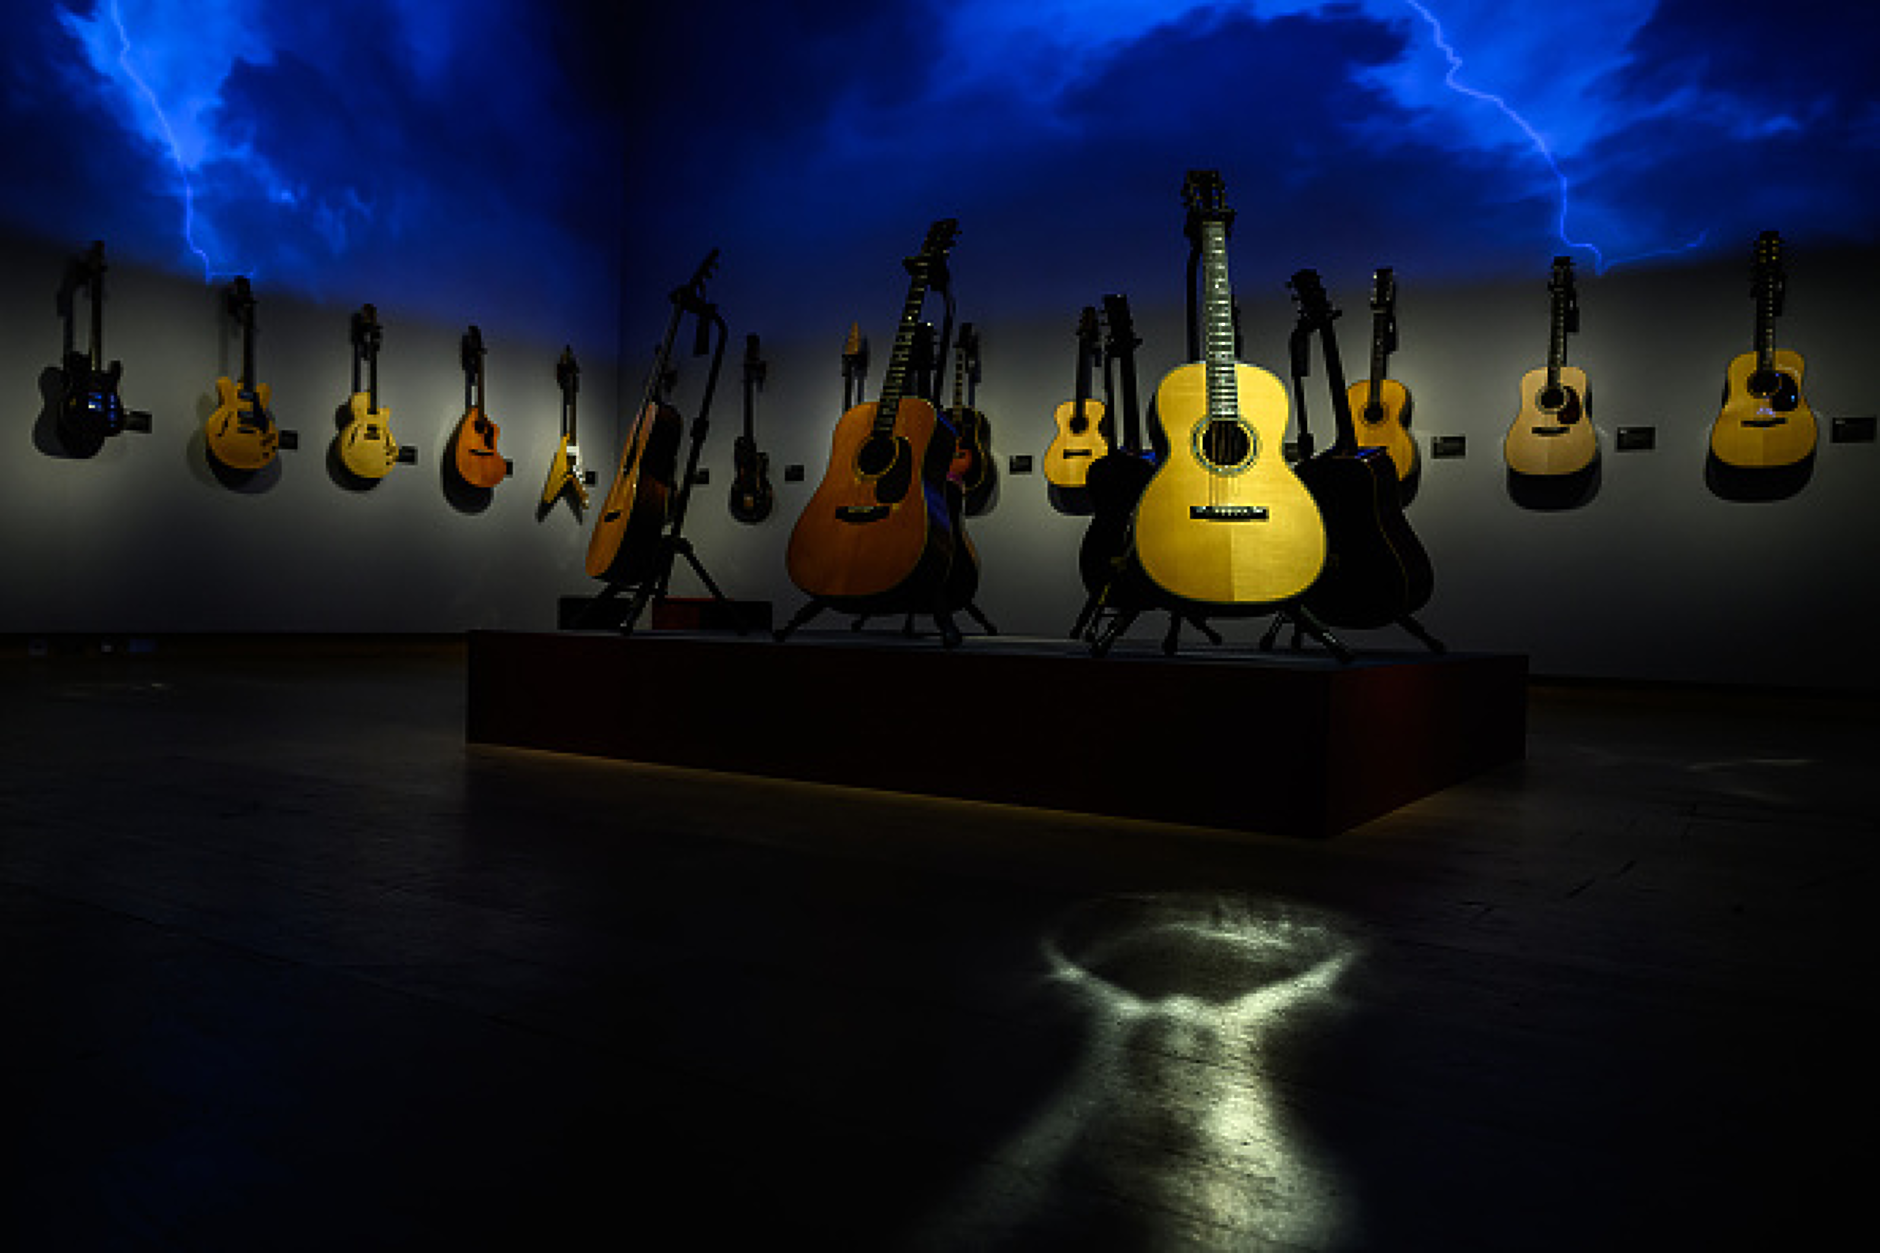 Колекцията включва и акустични китари, сред които се откроява марка Martin с първоначална оценка 5000-7000 паунда. Снимка: Getty Images